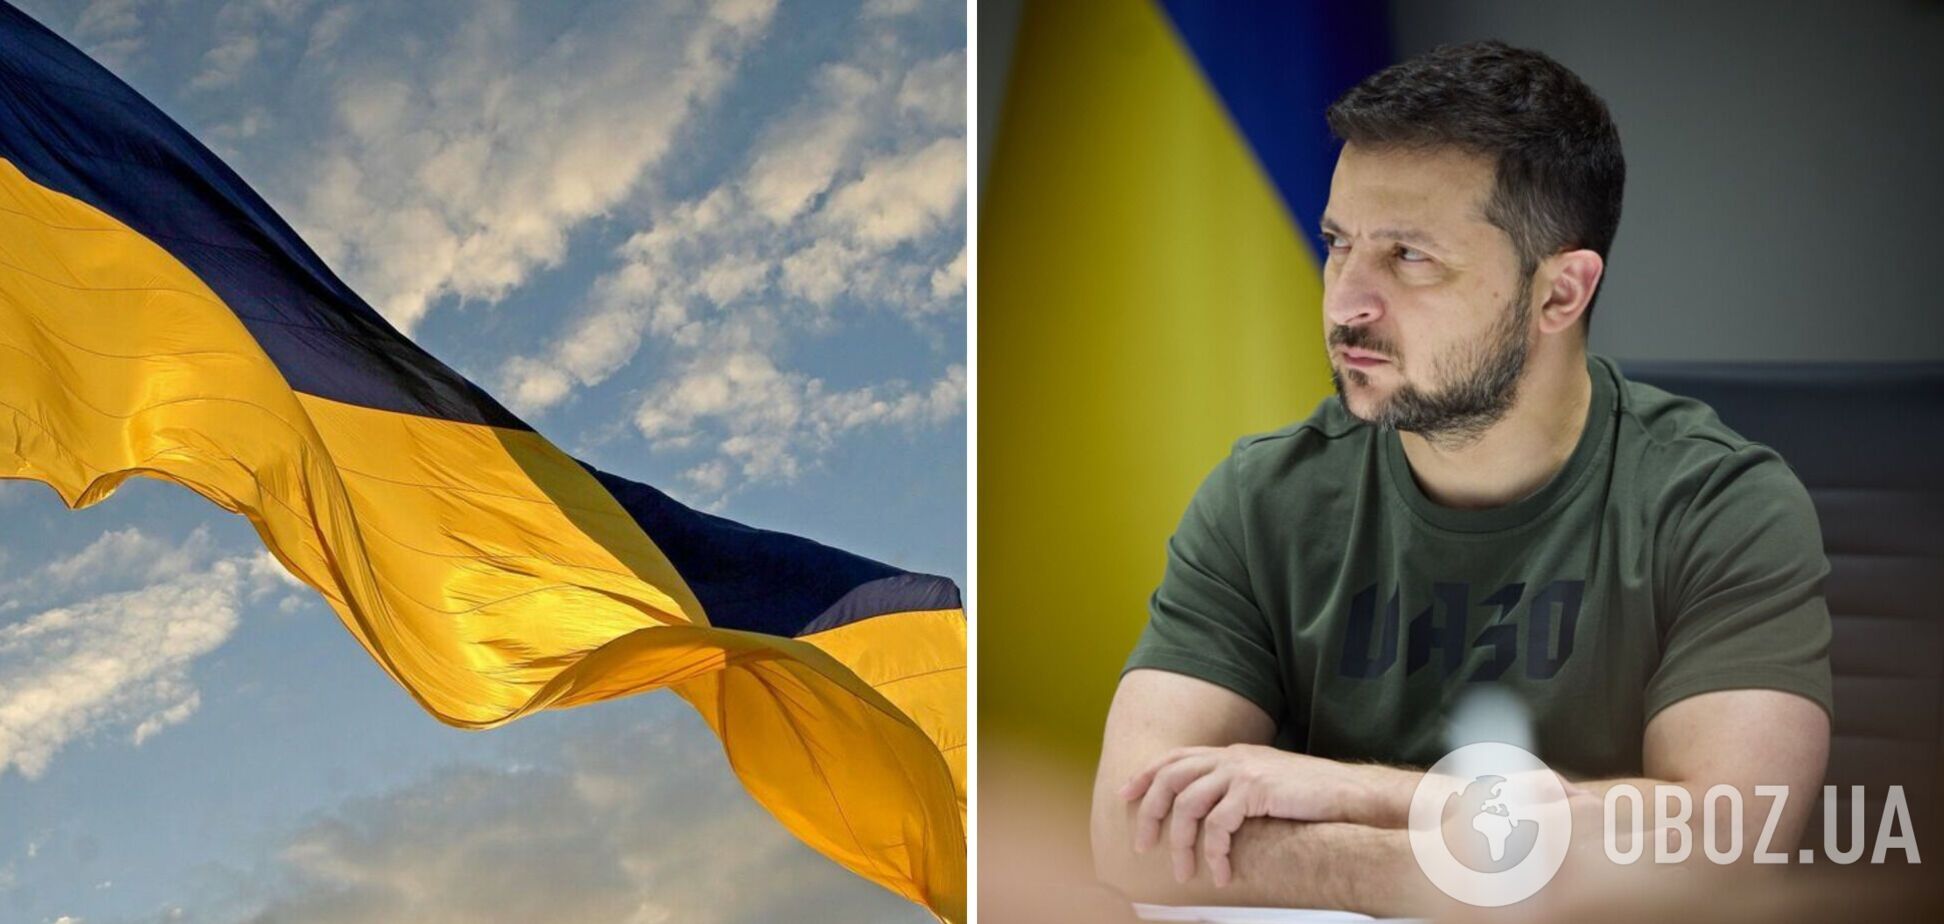 Украинский флаг стал глобальным символом смелости, а украинцы объединили мир вокруг подлинных ценностей, – Зеленский